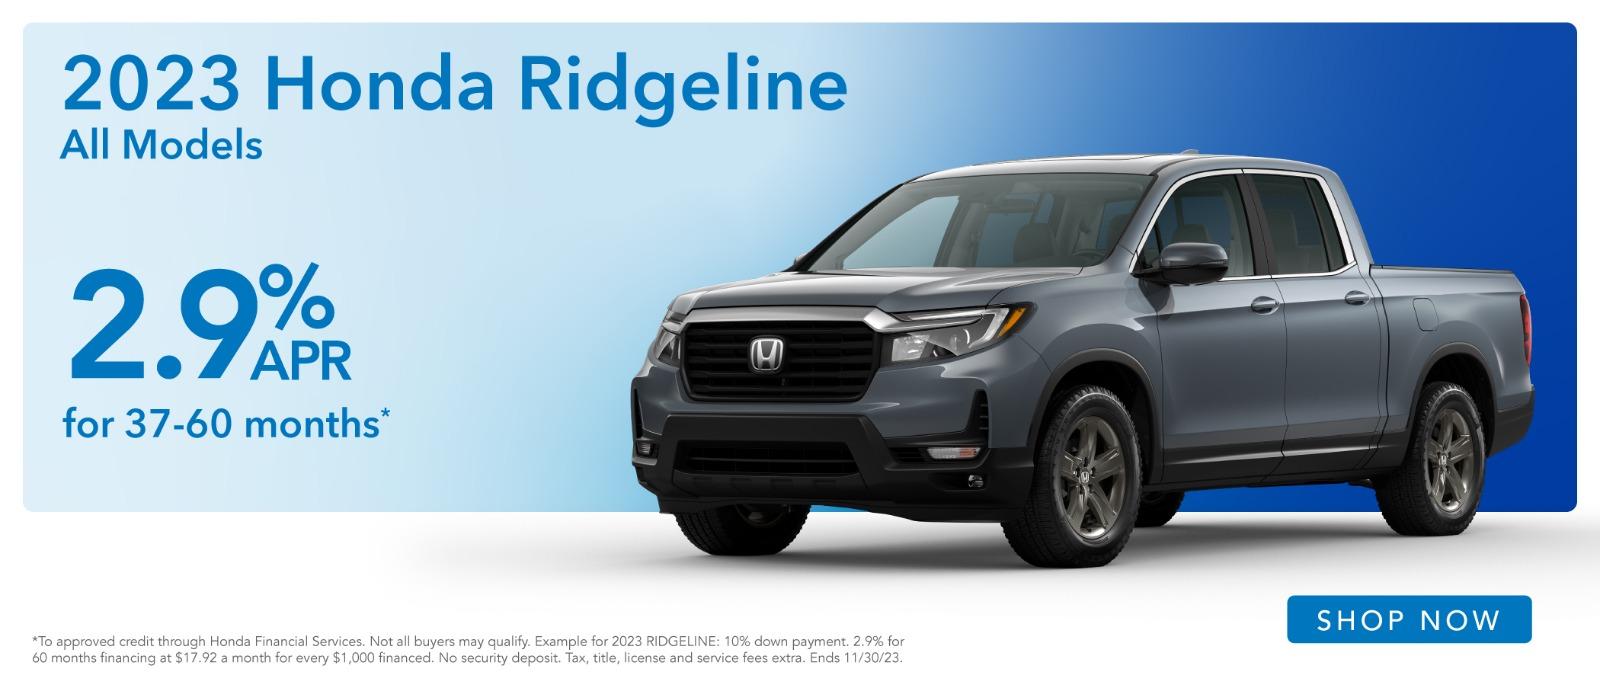 2023 Honda Ridgeline 2.9% Apr For 37-60 months